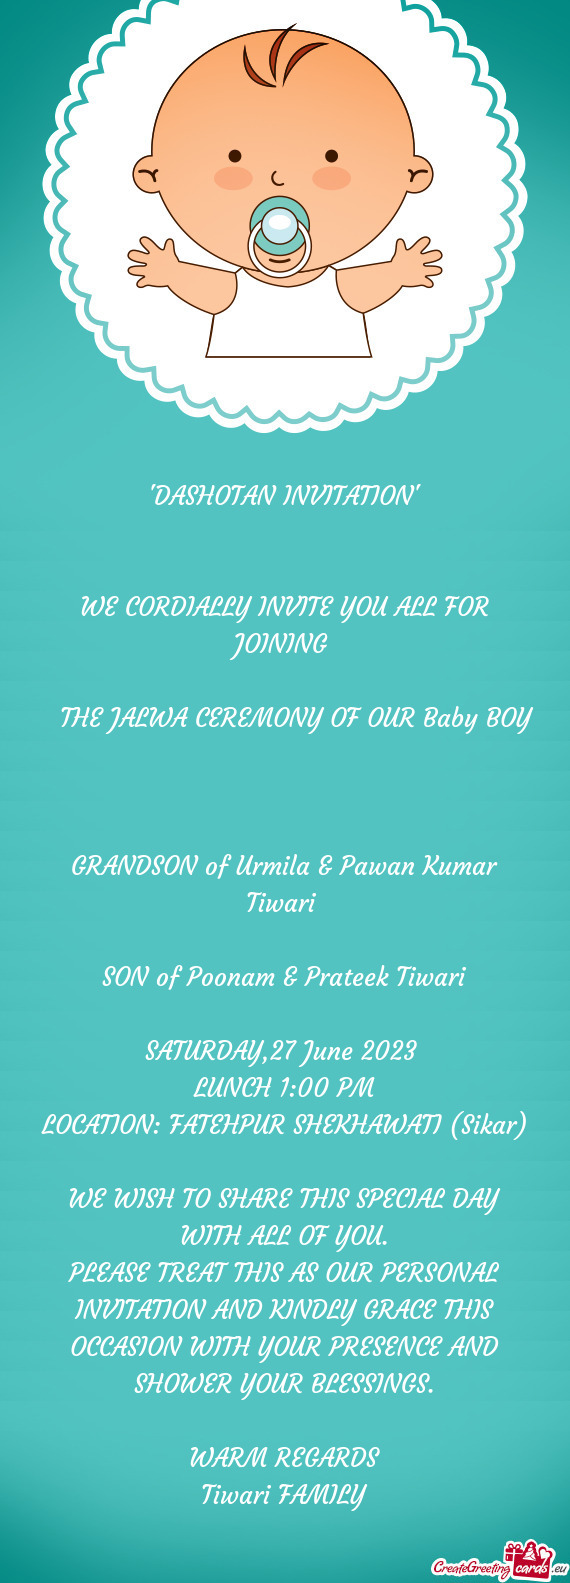 SON of Poonam & Prateek Tiwari